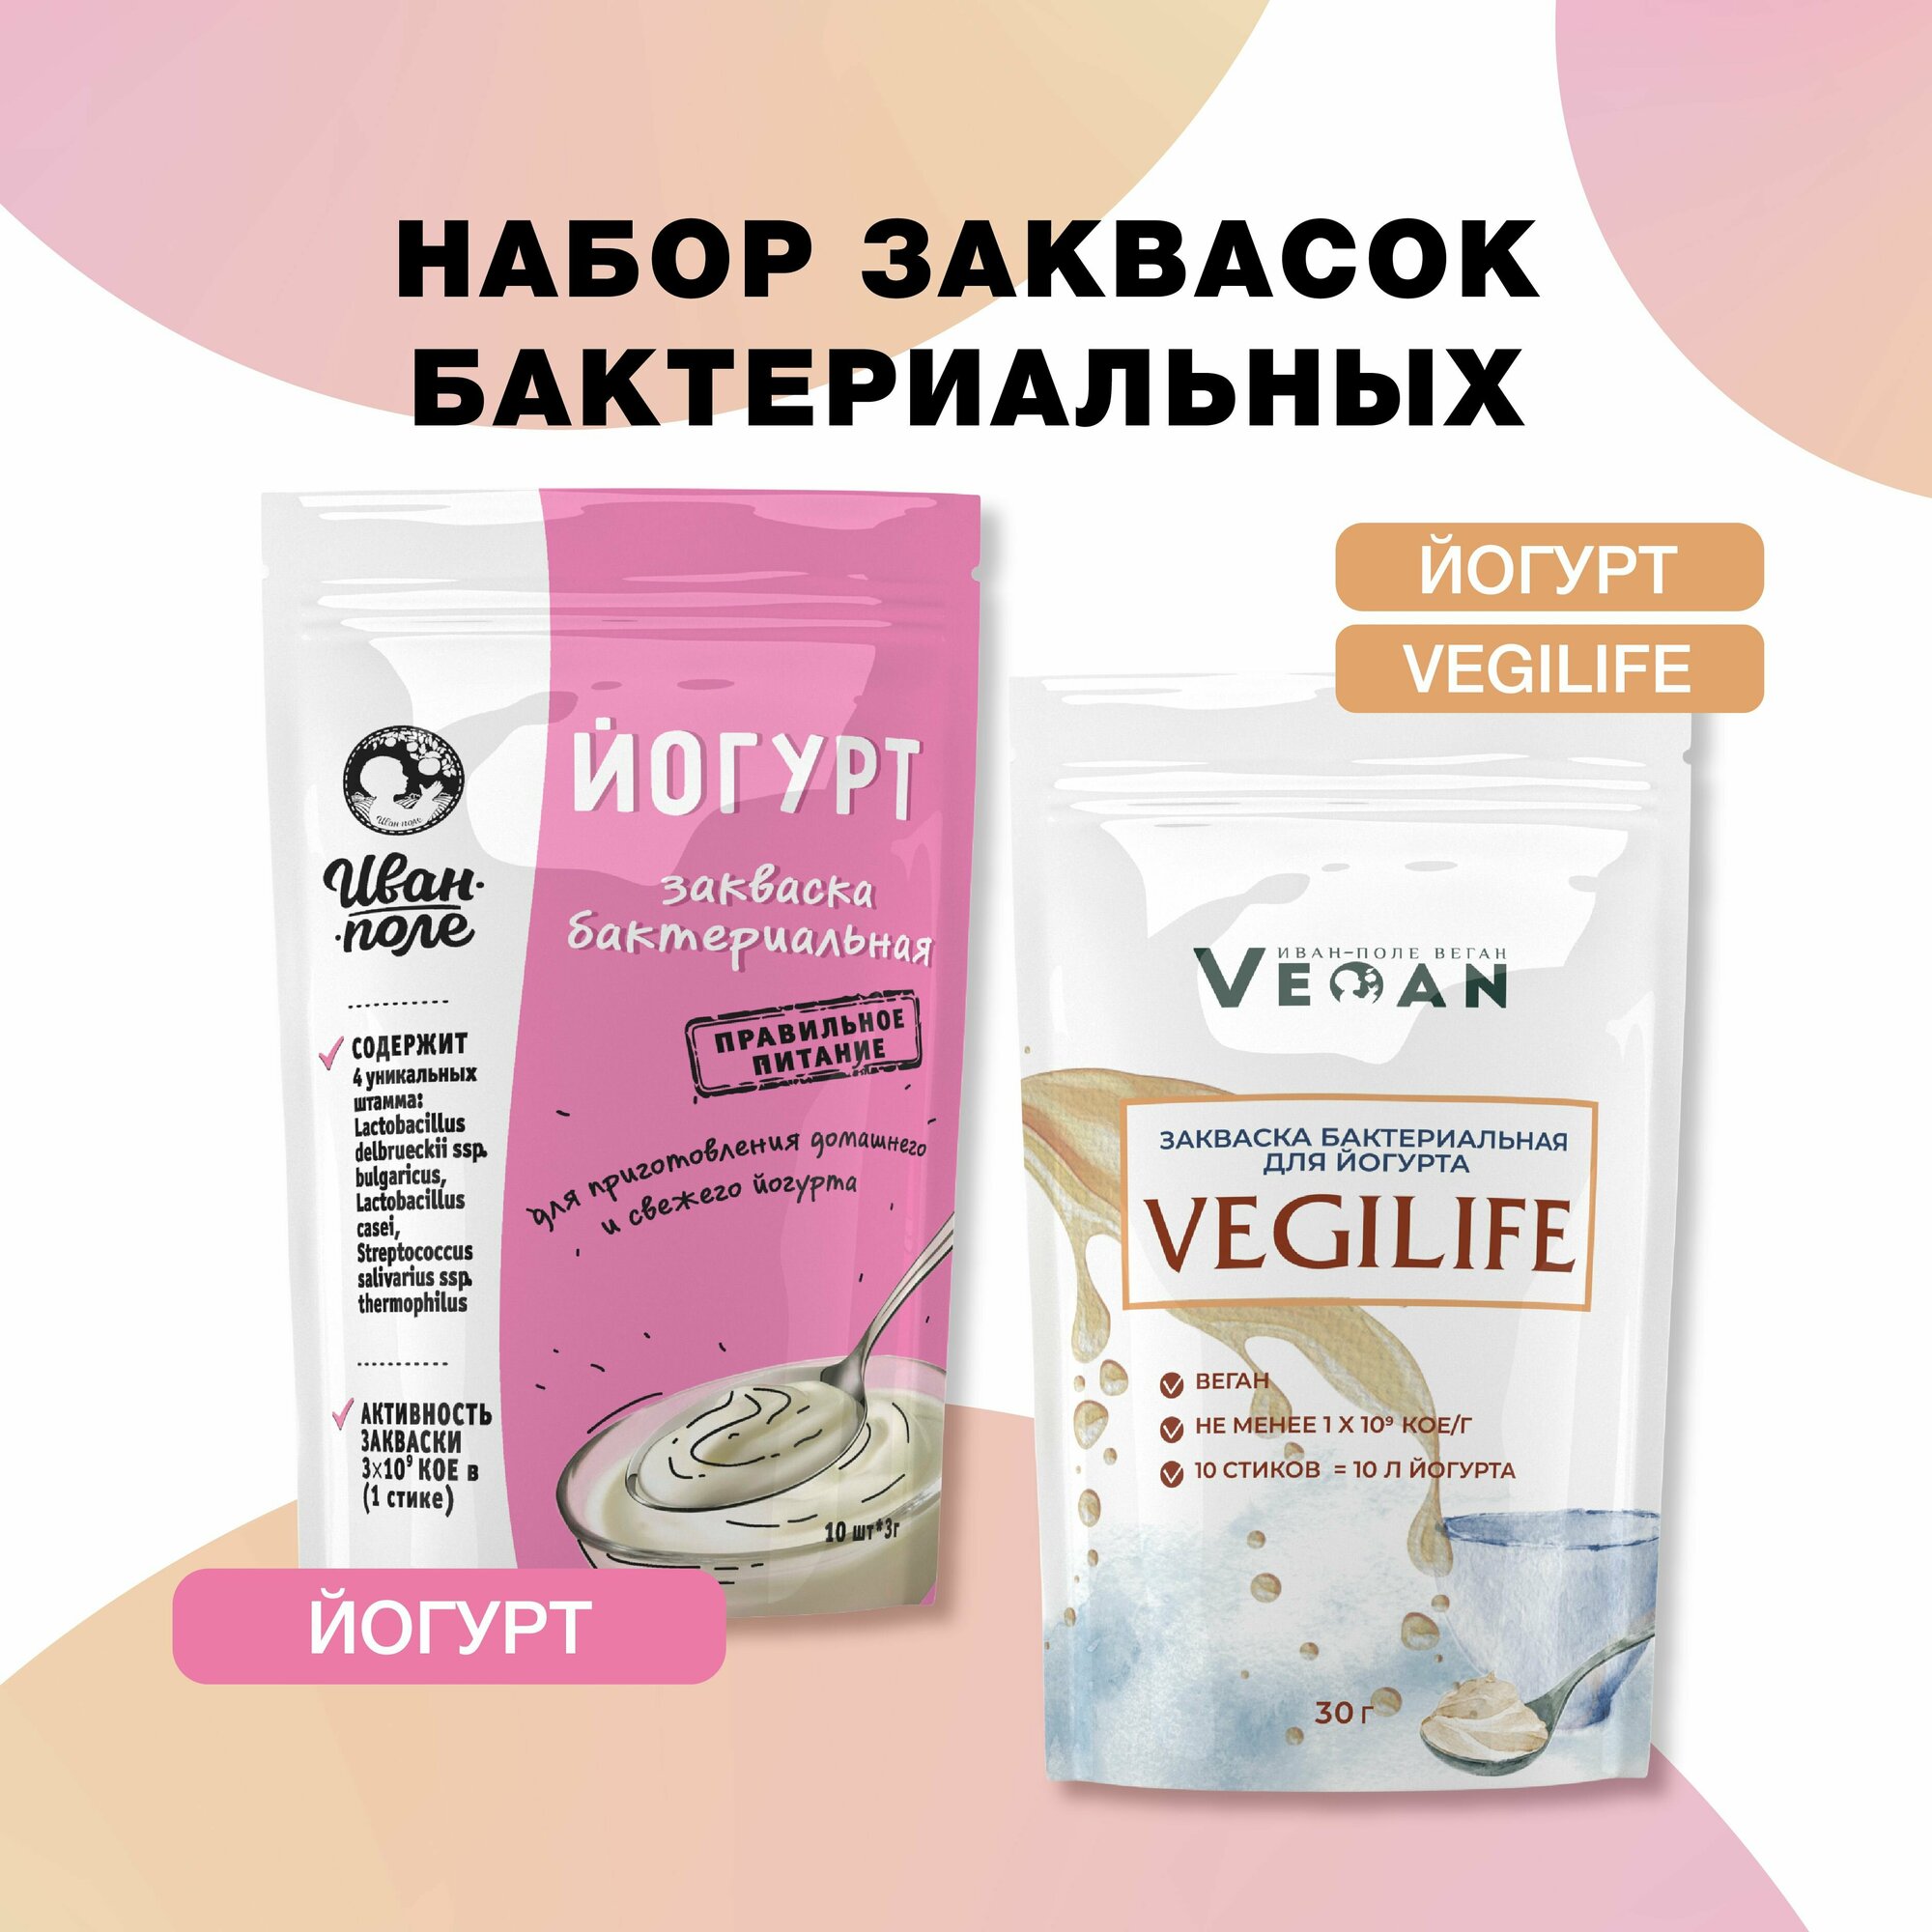 Закваска набор Йогурт + Йогурт "Веган", 20 порций по 3 г, сухая бактериальная, Иван-поле